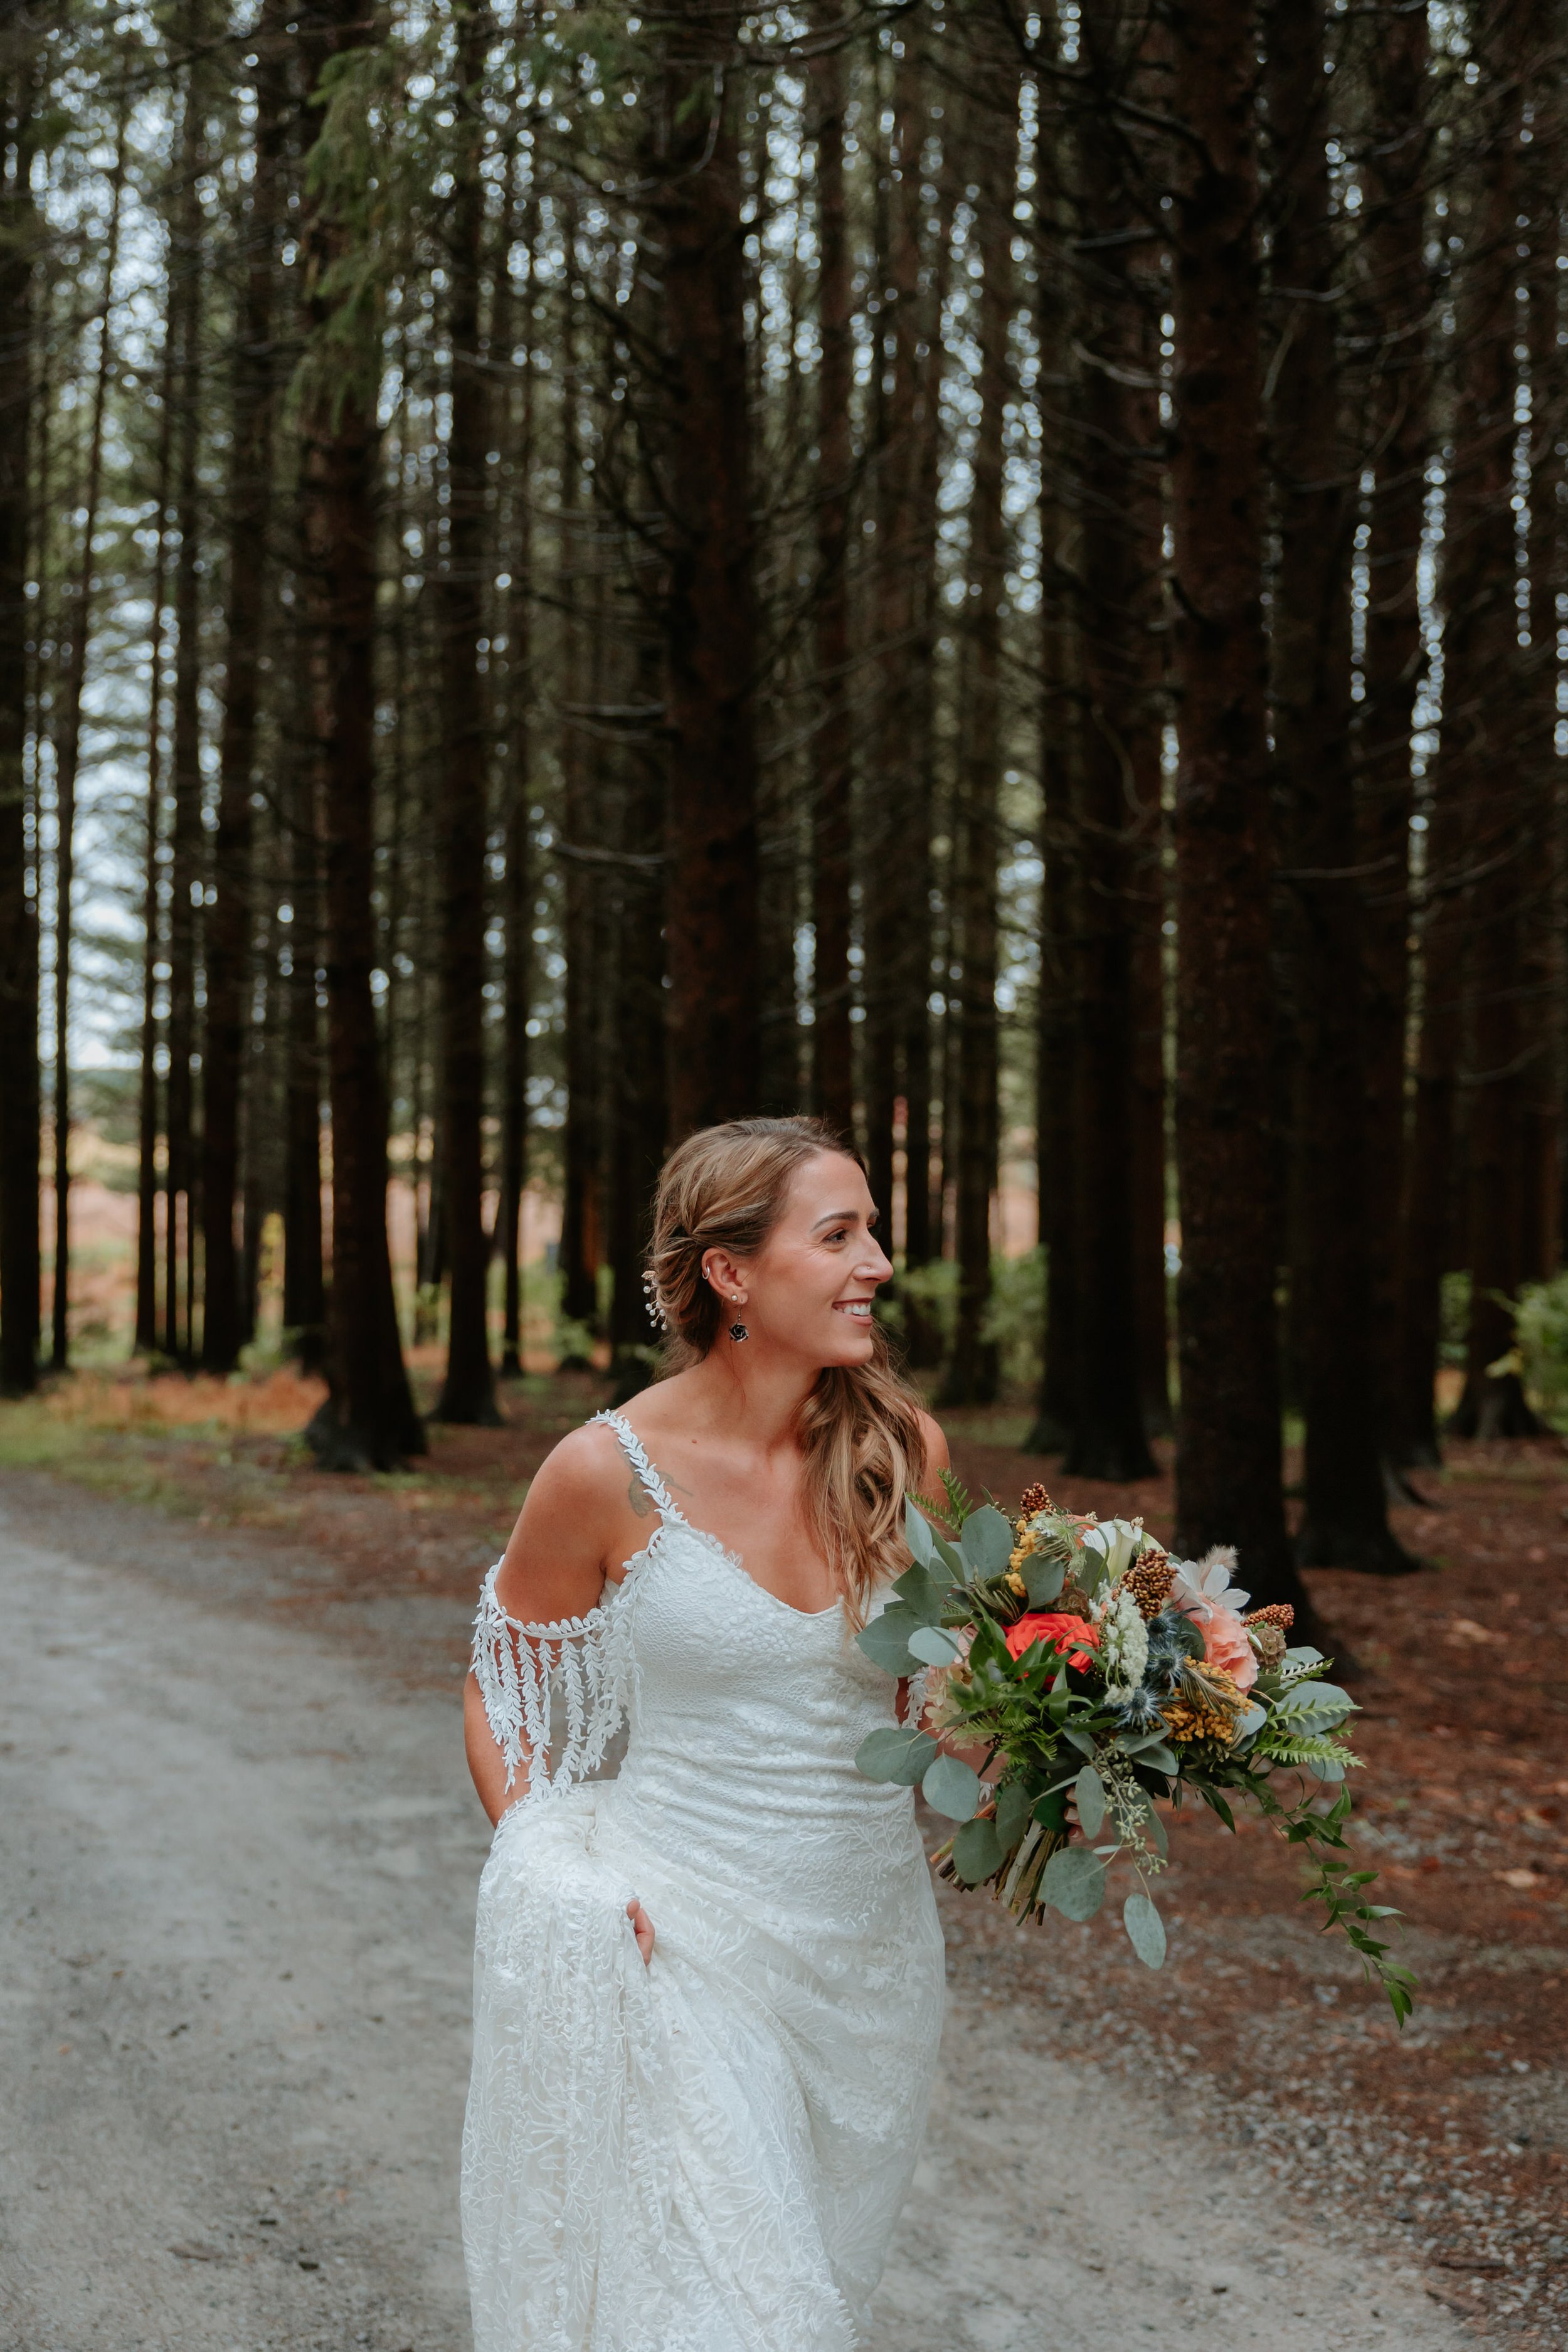 A bride walks down a gravel road.